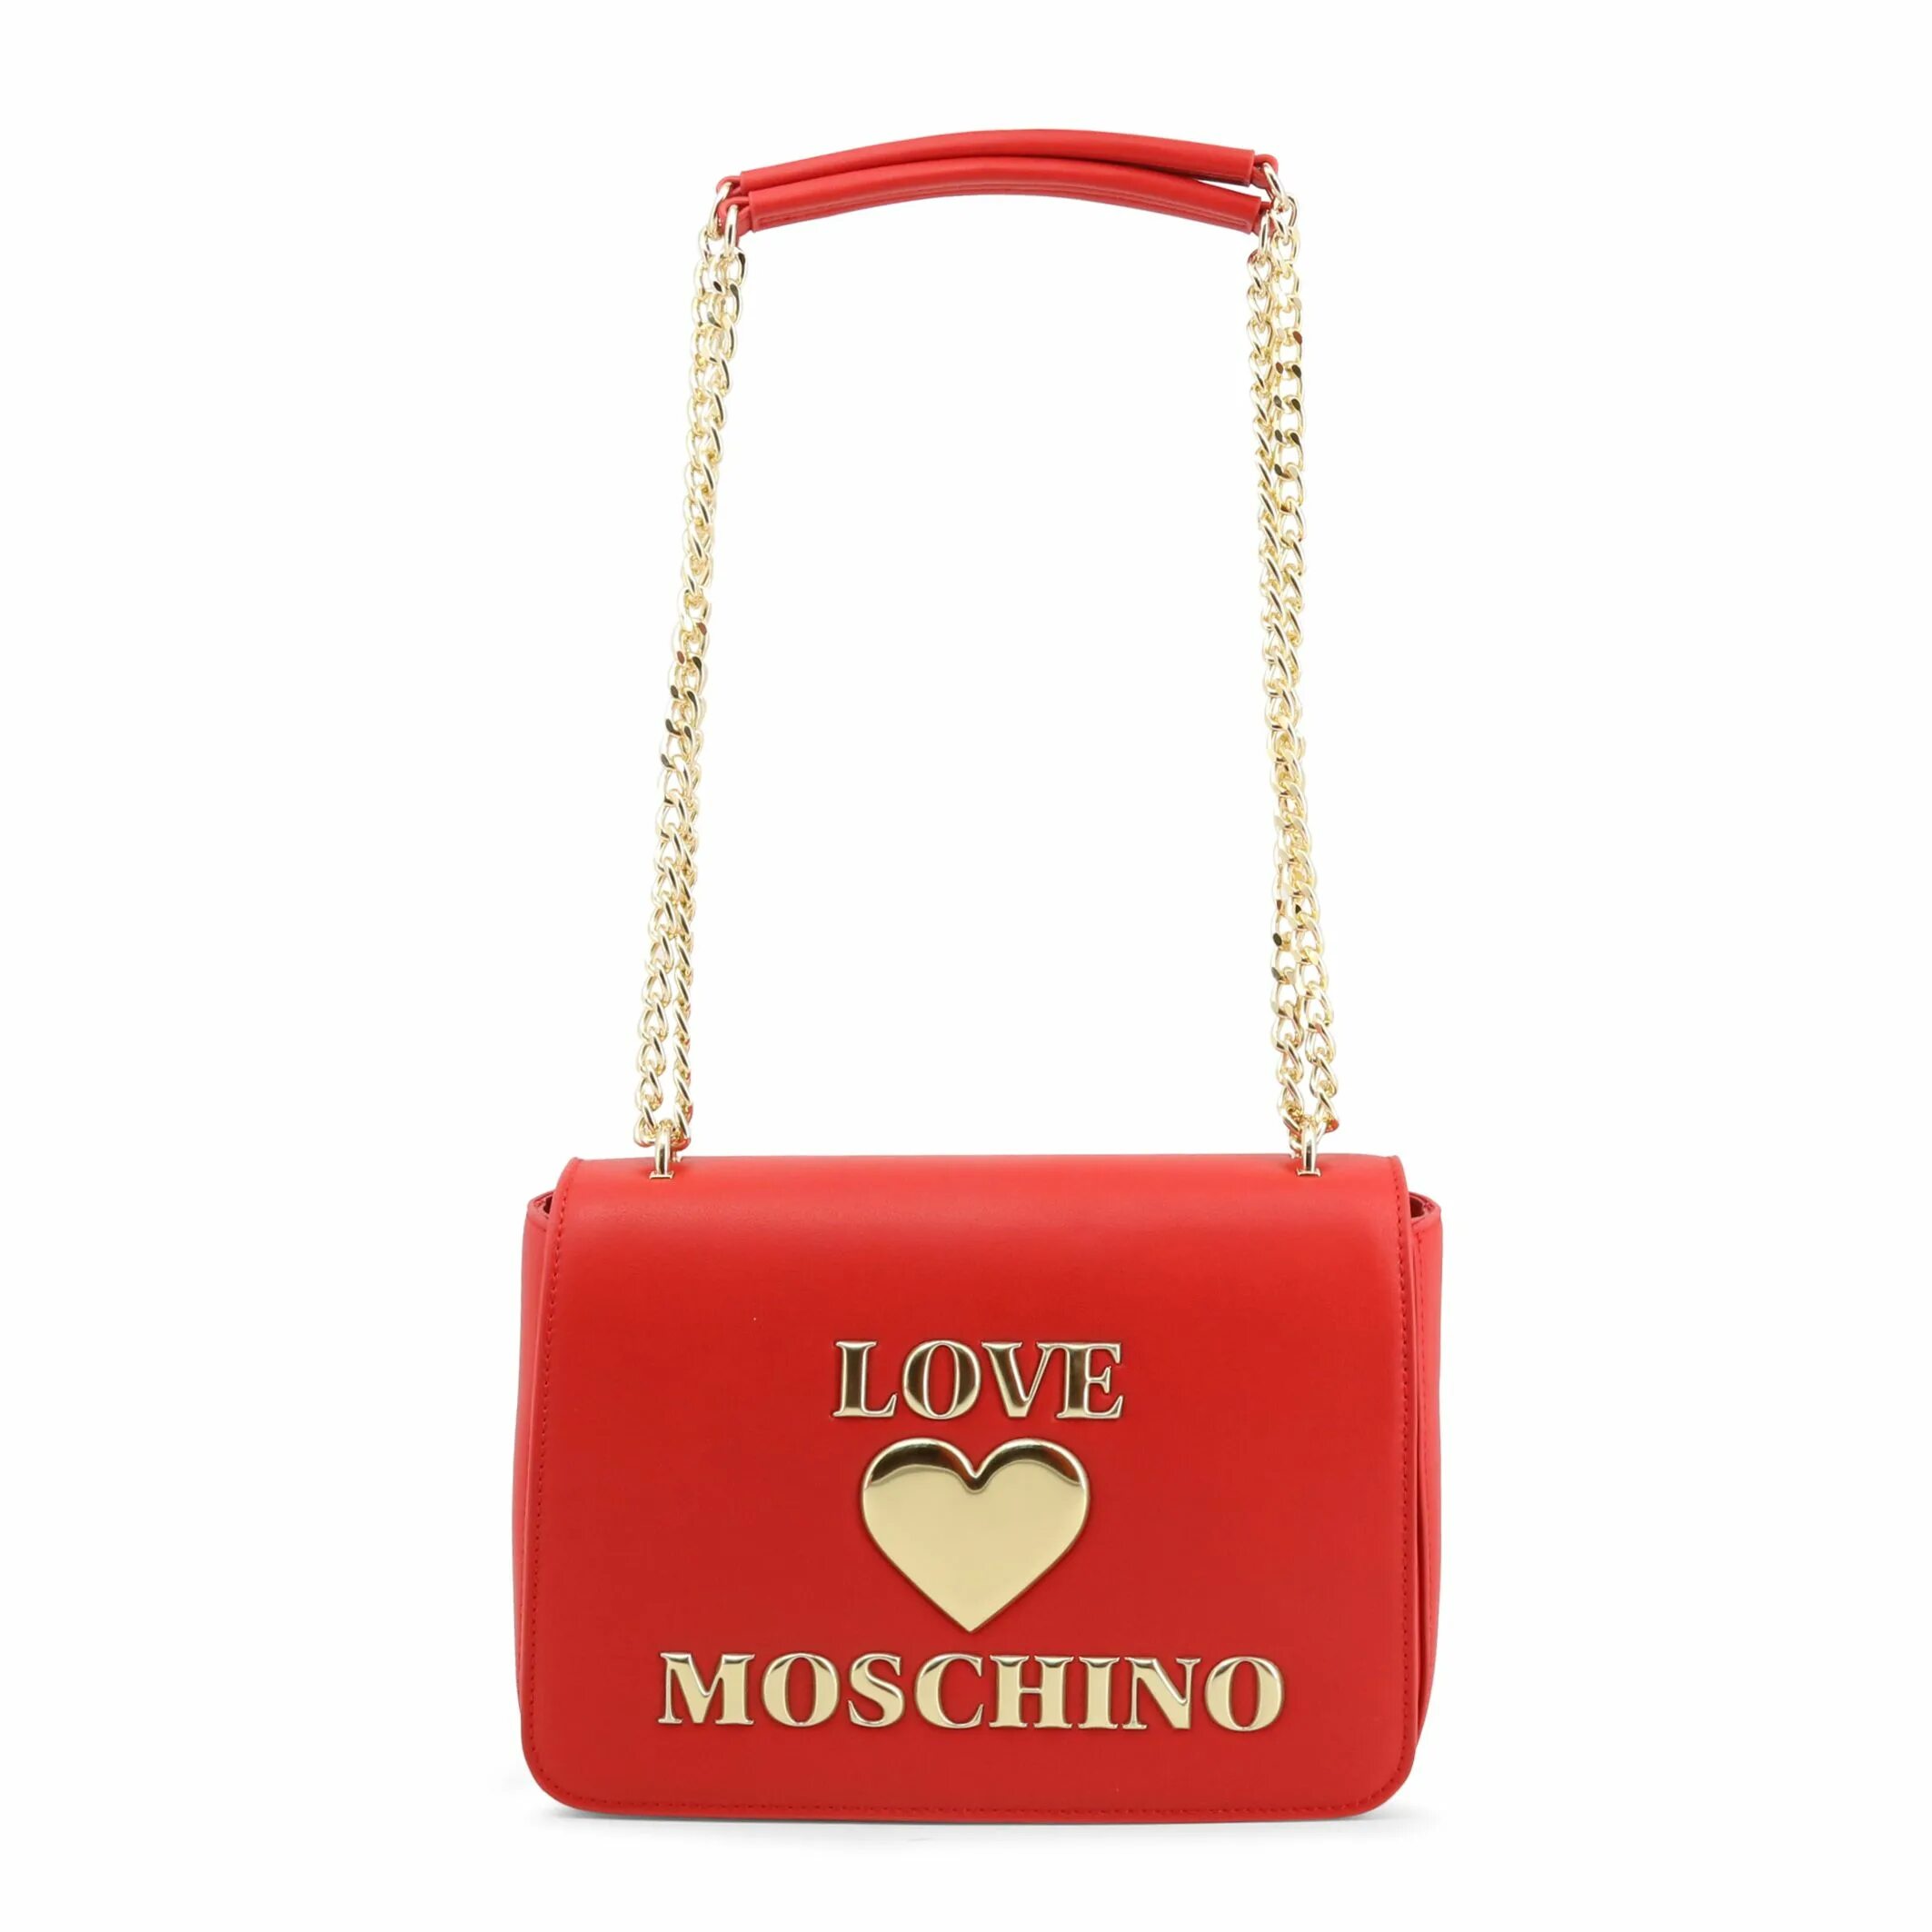 Love Moschino сумки. Москино логотип. Love Moschino бирка. Барахолка Love Moschino.